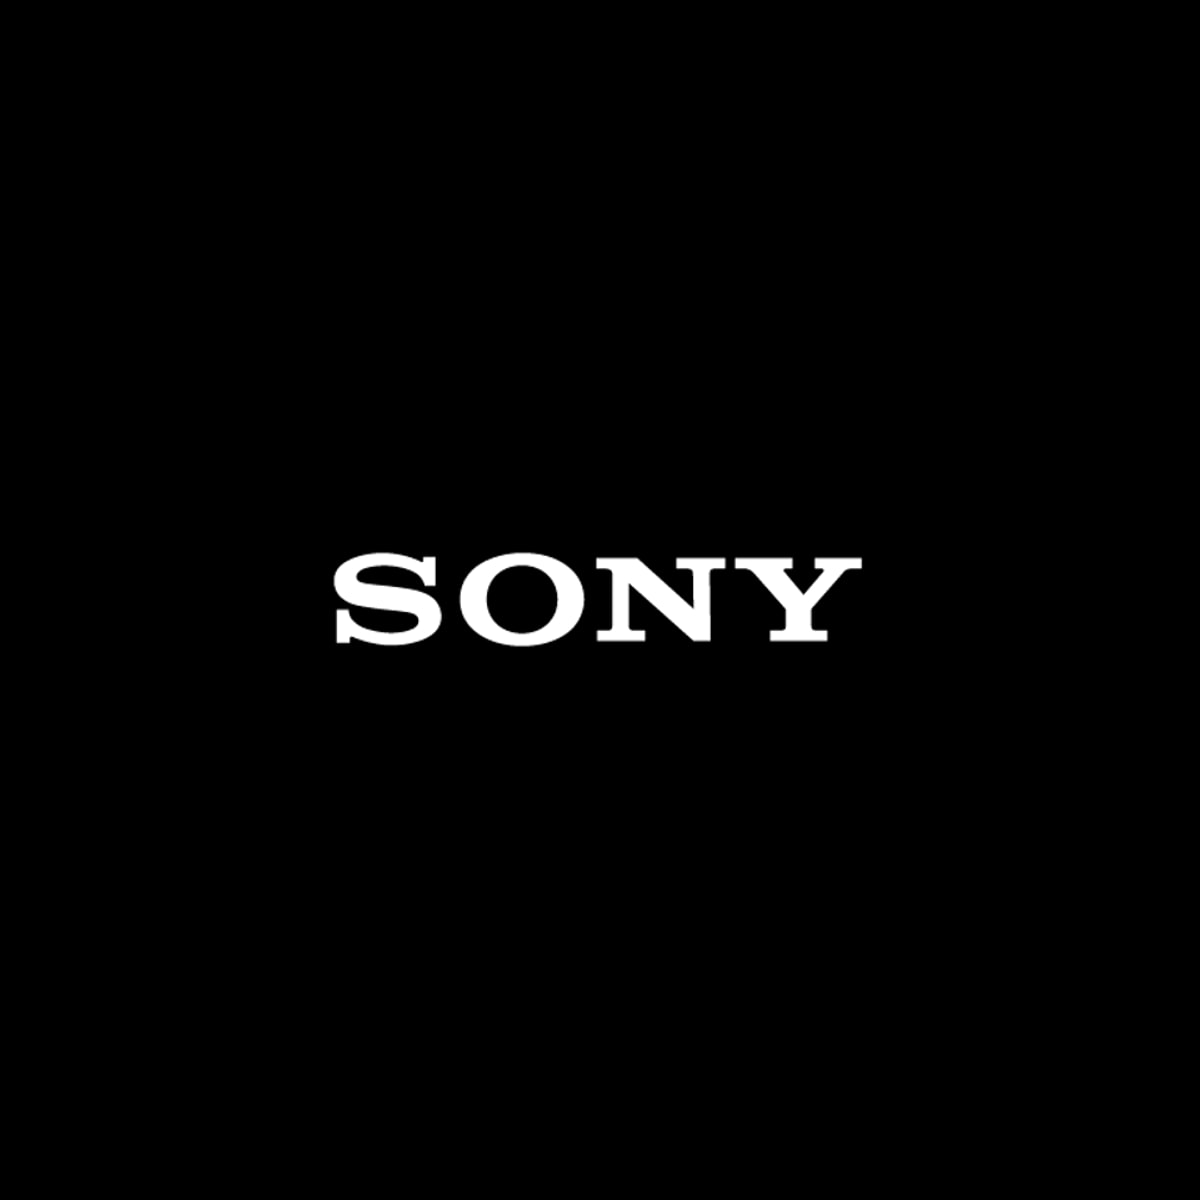 Tôi không thể tải xuống, cài đặt hoặc cập nhật bất kỳ ứng dụng nào từ Cửa hàng Google Play. | Sony VN